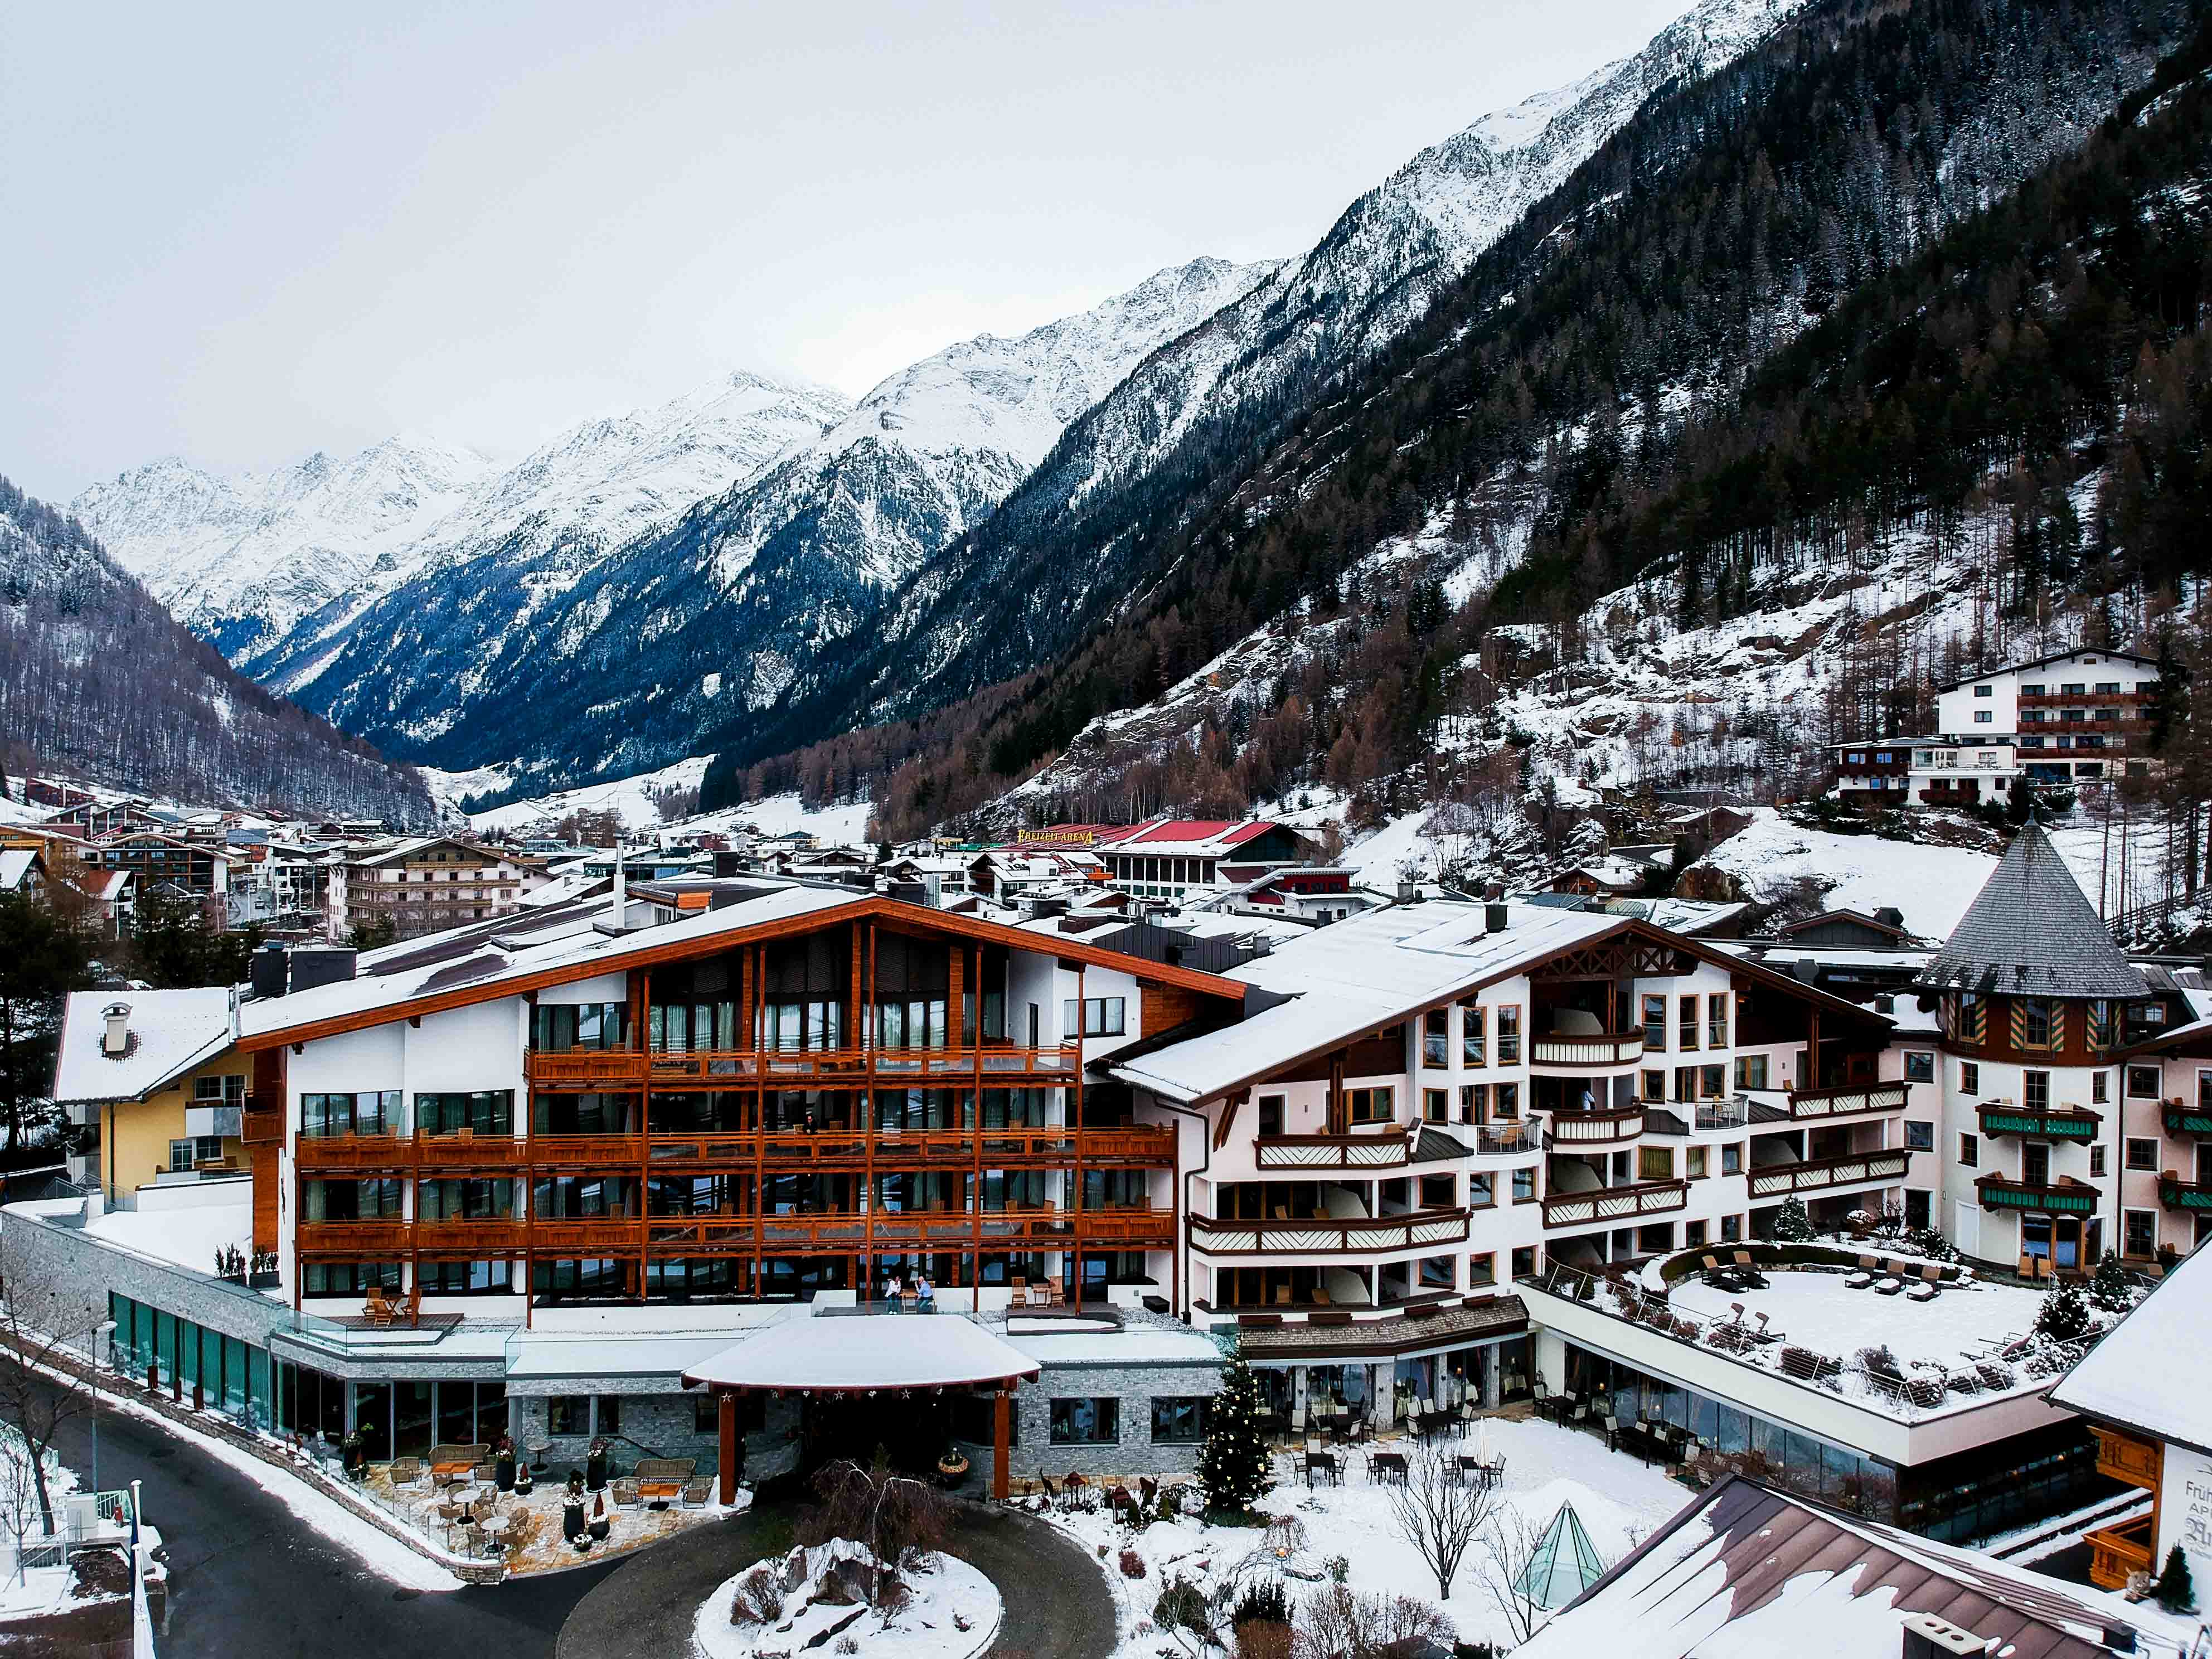  Das-Central-Sölden-5-Sterne-Wellnesshotel-Luxushotel-Sölden-Tirol-Österreich-Drohne-Luftaufnahme-Schnee-Reiseblog